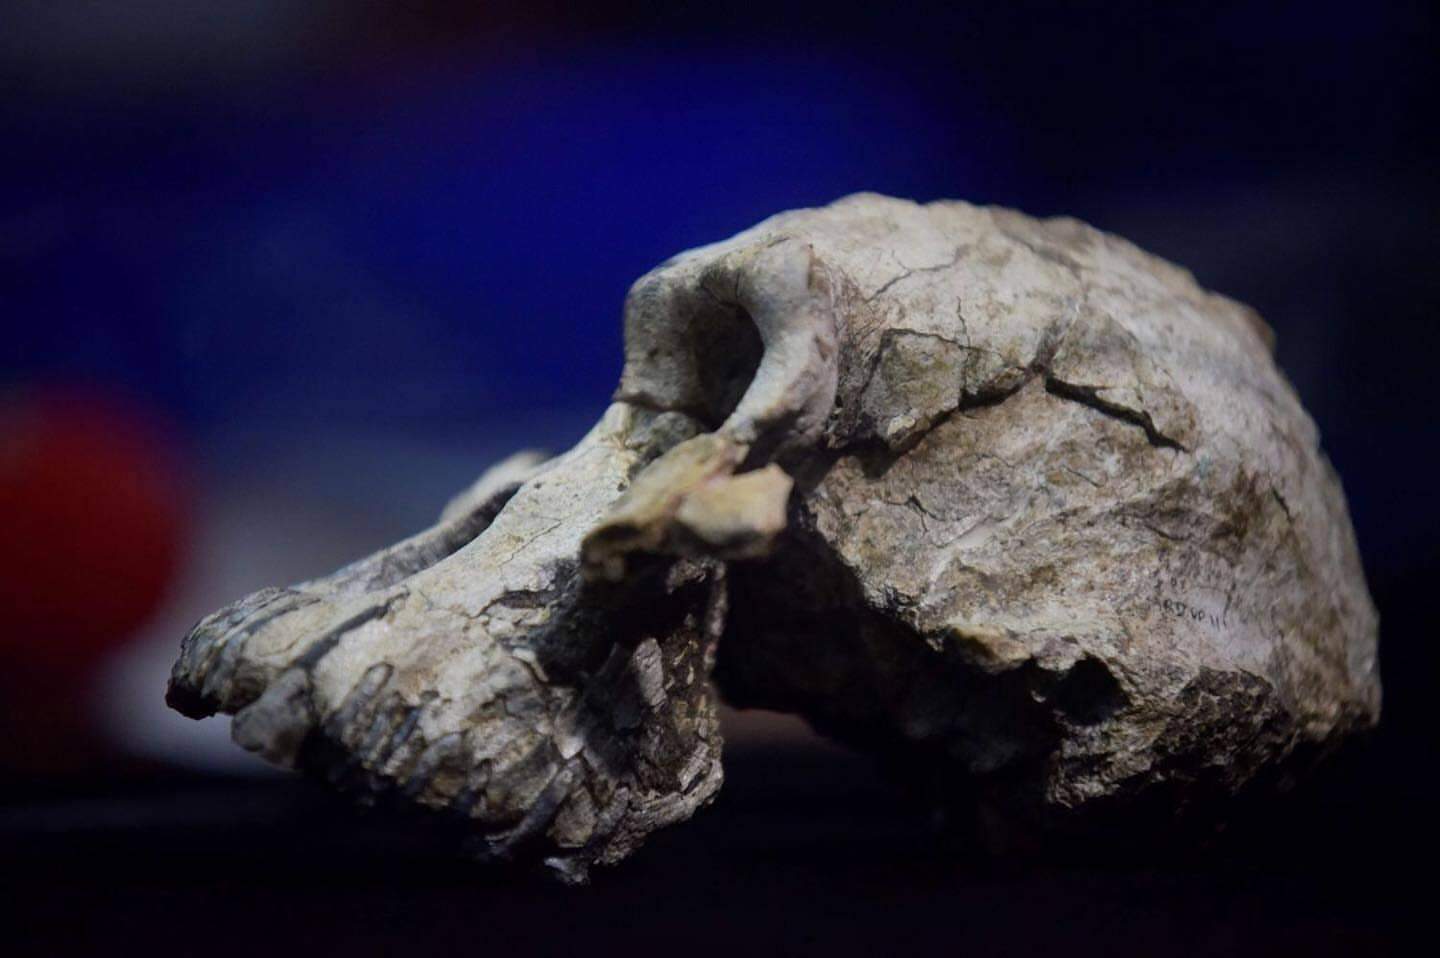 Pesquisadores descobriram crânio de um ancestral do homem que viveu há 3,8 milhões de anos na Etiópia.